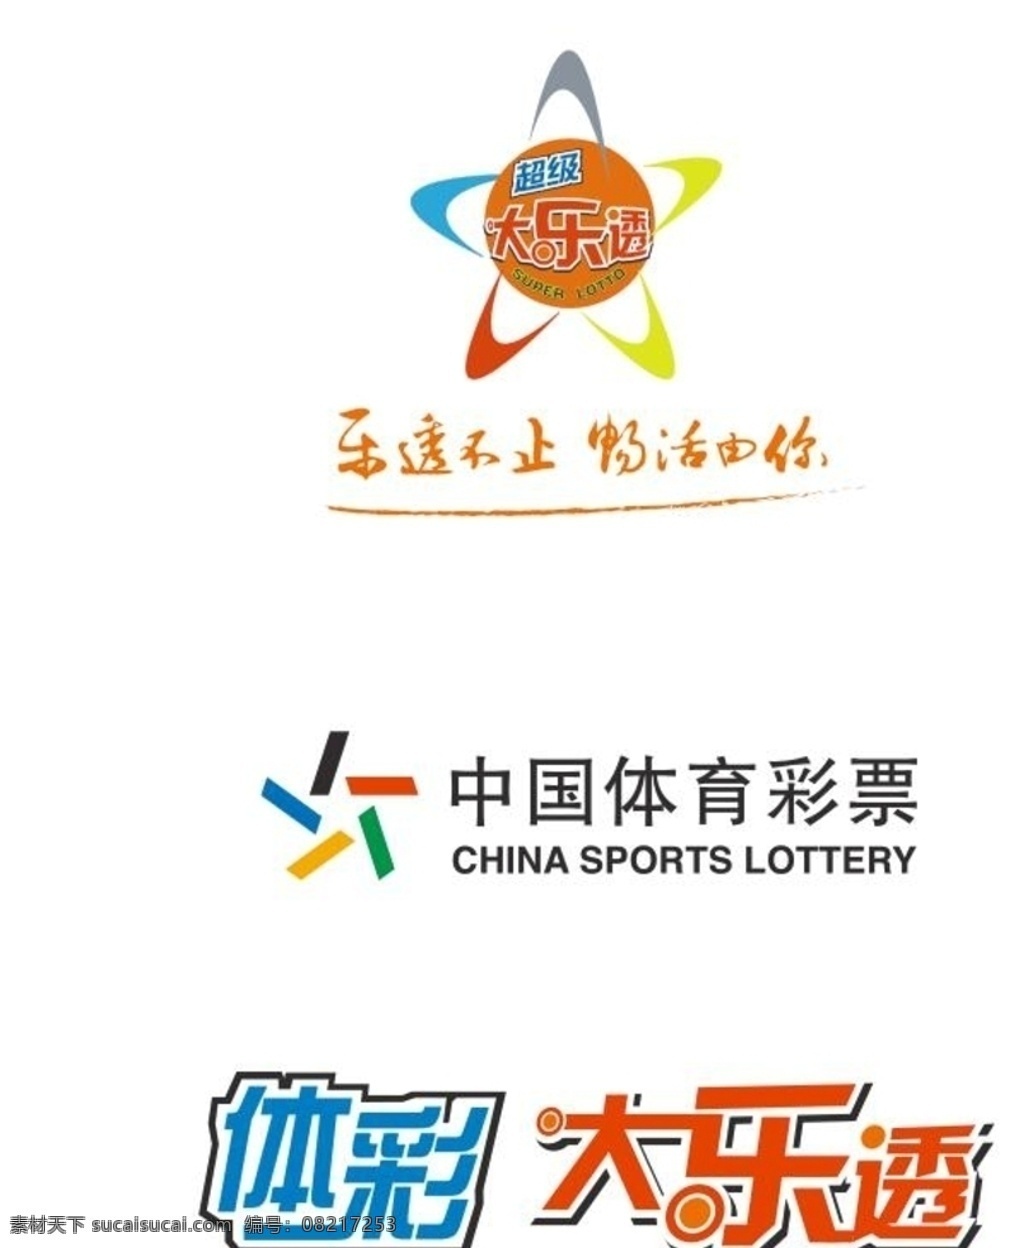 超级大乐透 大乐透 体彩 体育彩票 中国体育彩票 彩票 矢量 标志 标志图标 公共标识标志